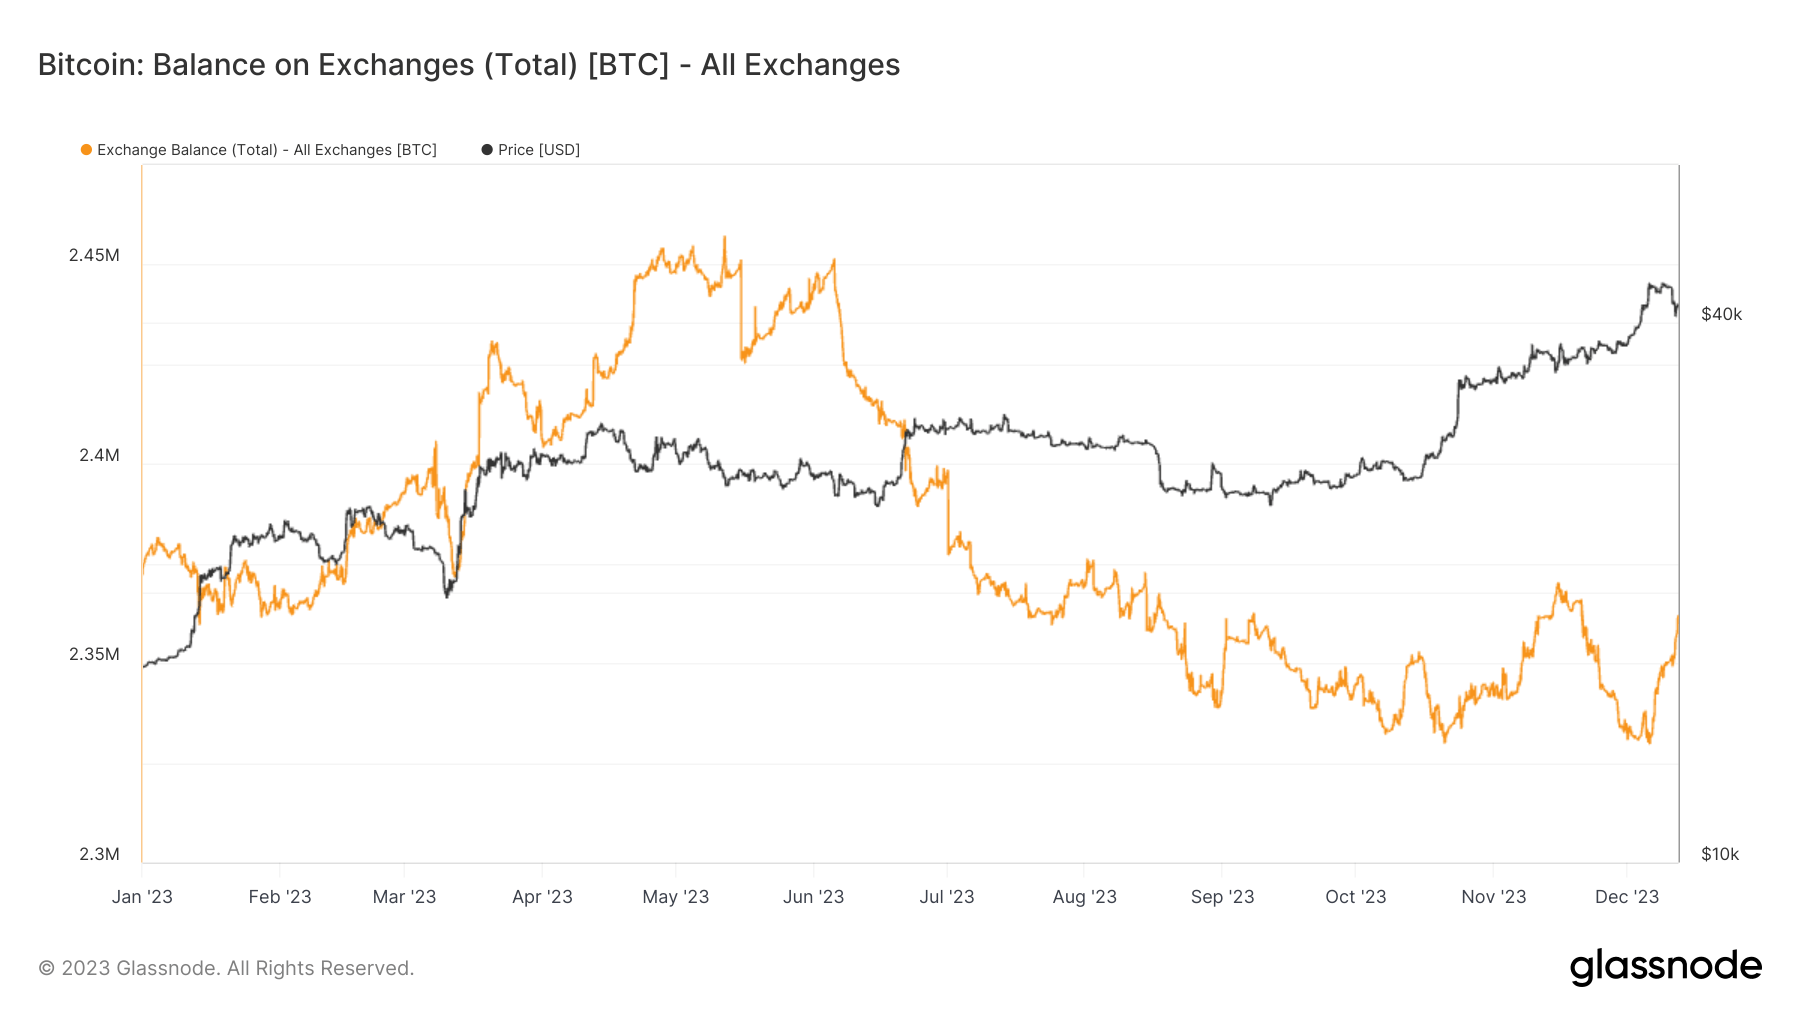 Bitcoin vê retorno massivo às exchanges com influxo de mais de 10,000 BTC